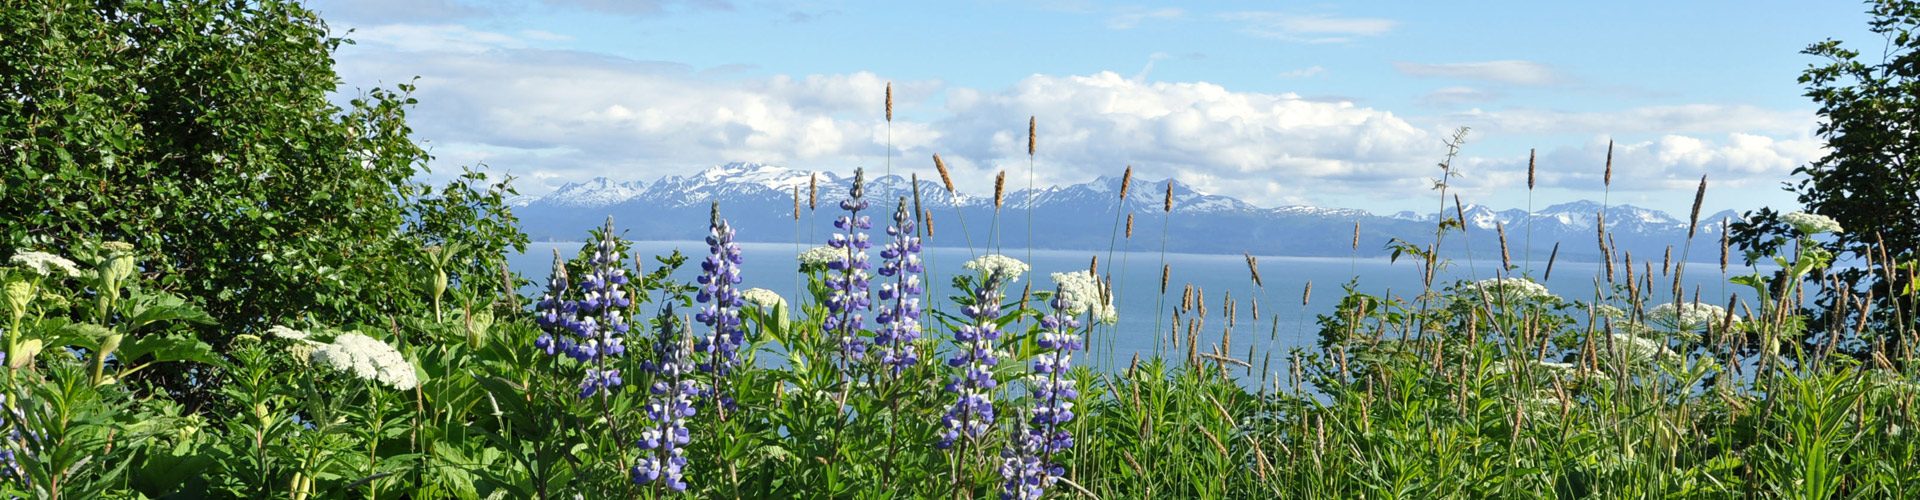 Cook Inlet bei Homer, Alaska - Blick auf die Alaska Range